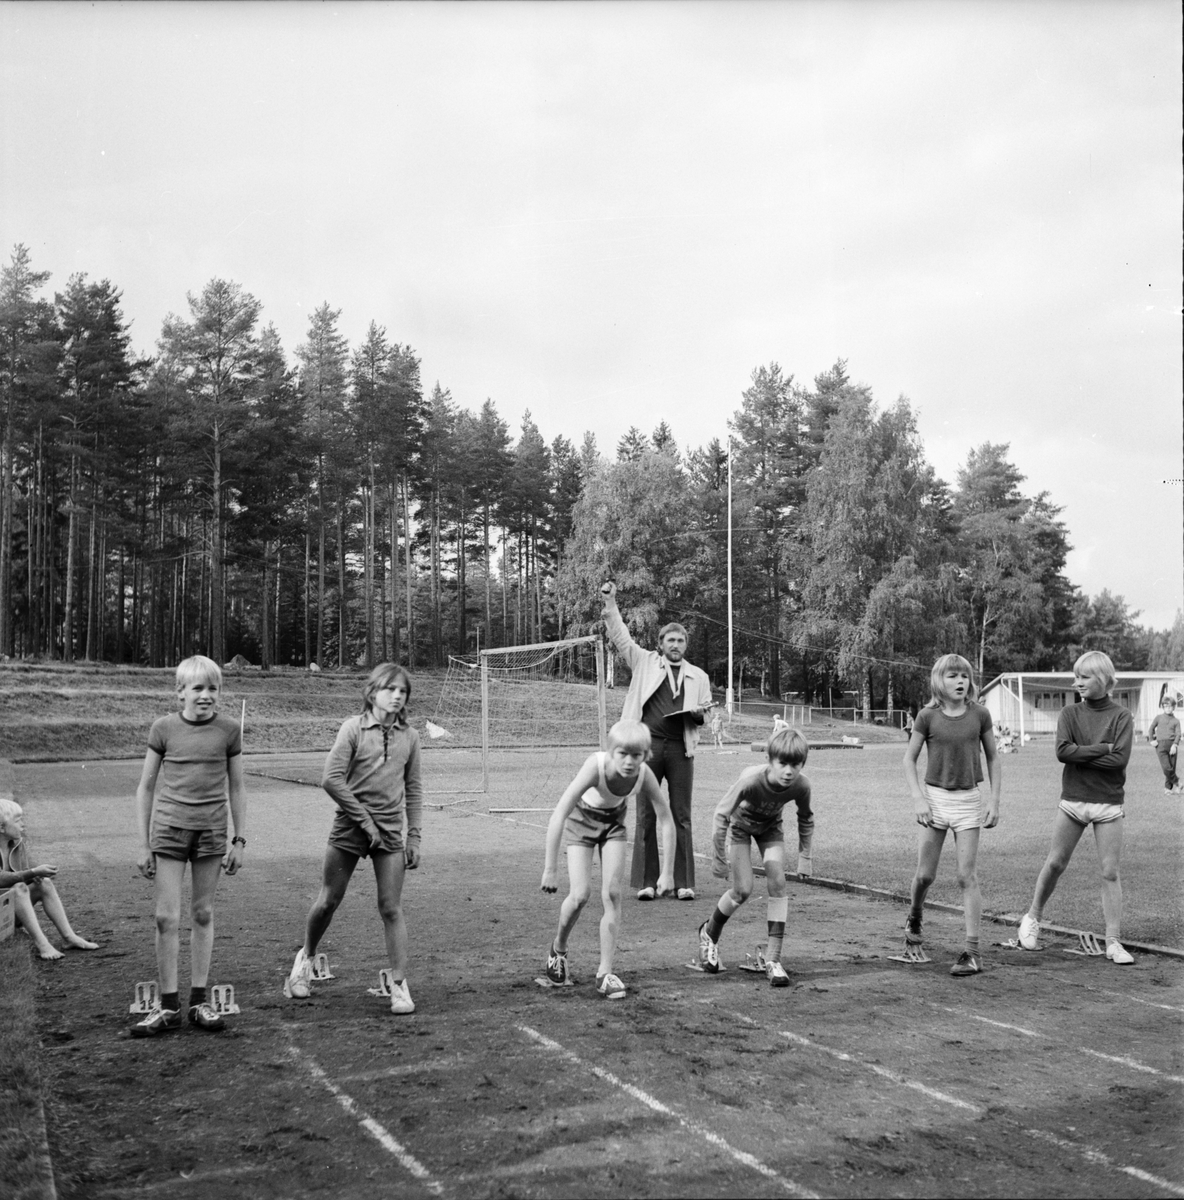 Skoltävlingar, Vallstaskolan
September 1972